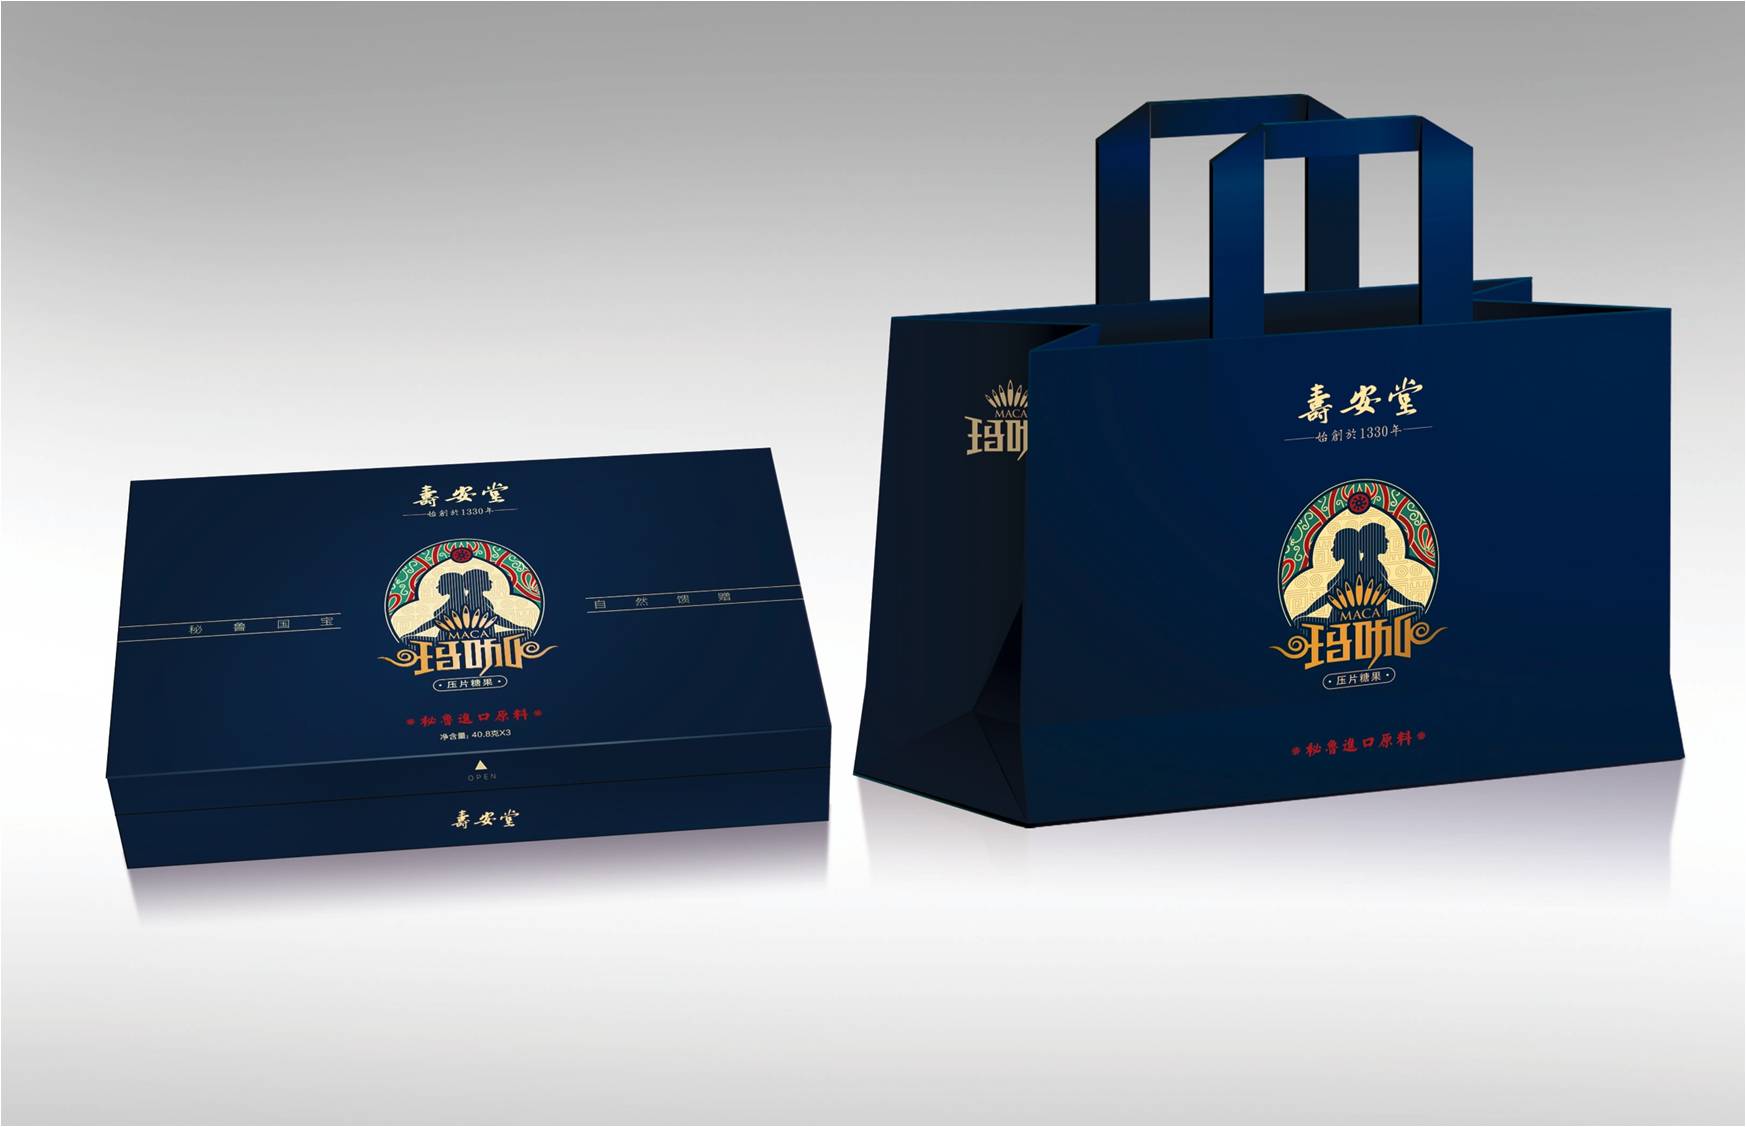 知名青浦礼盒包装设计公司案例排名前十名单发布 